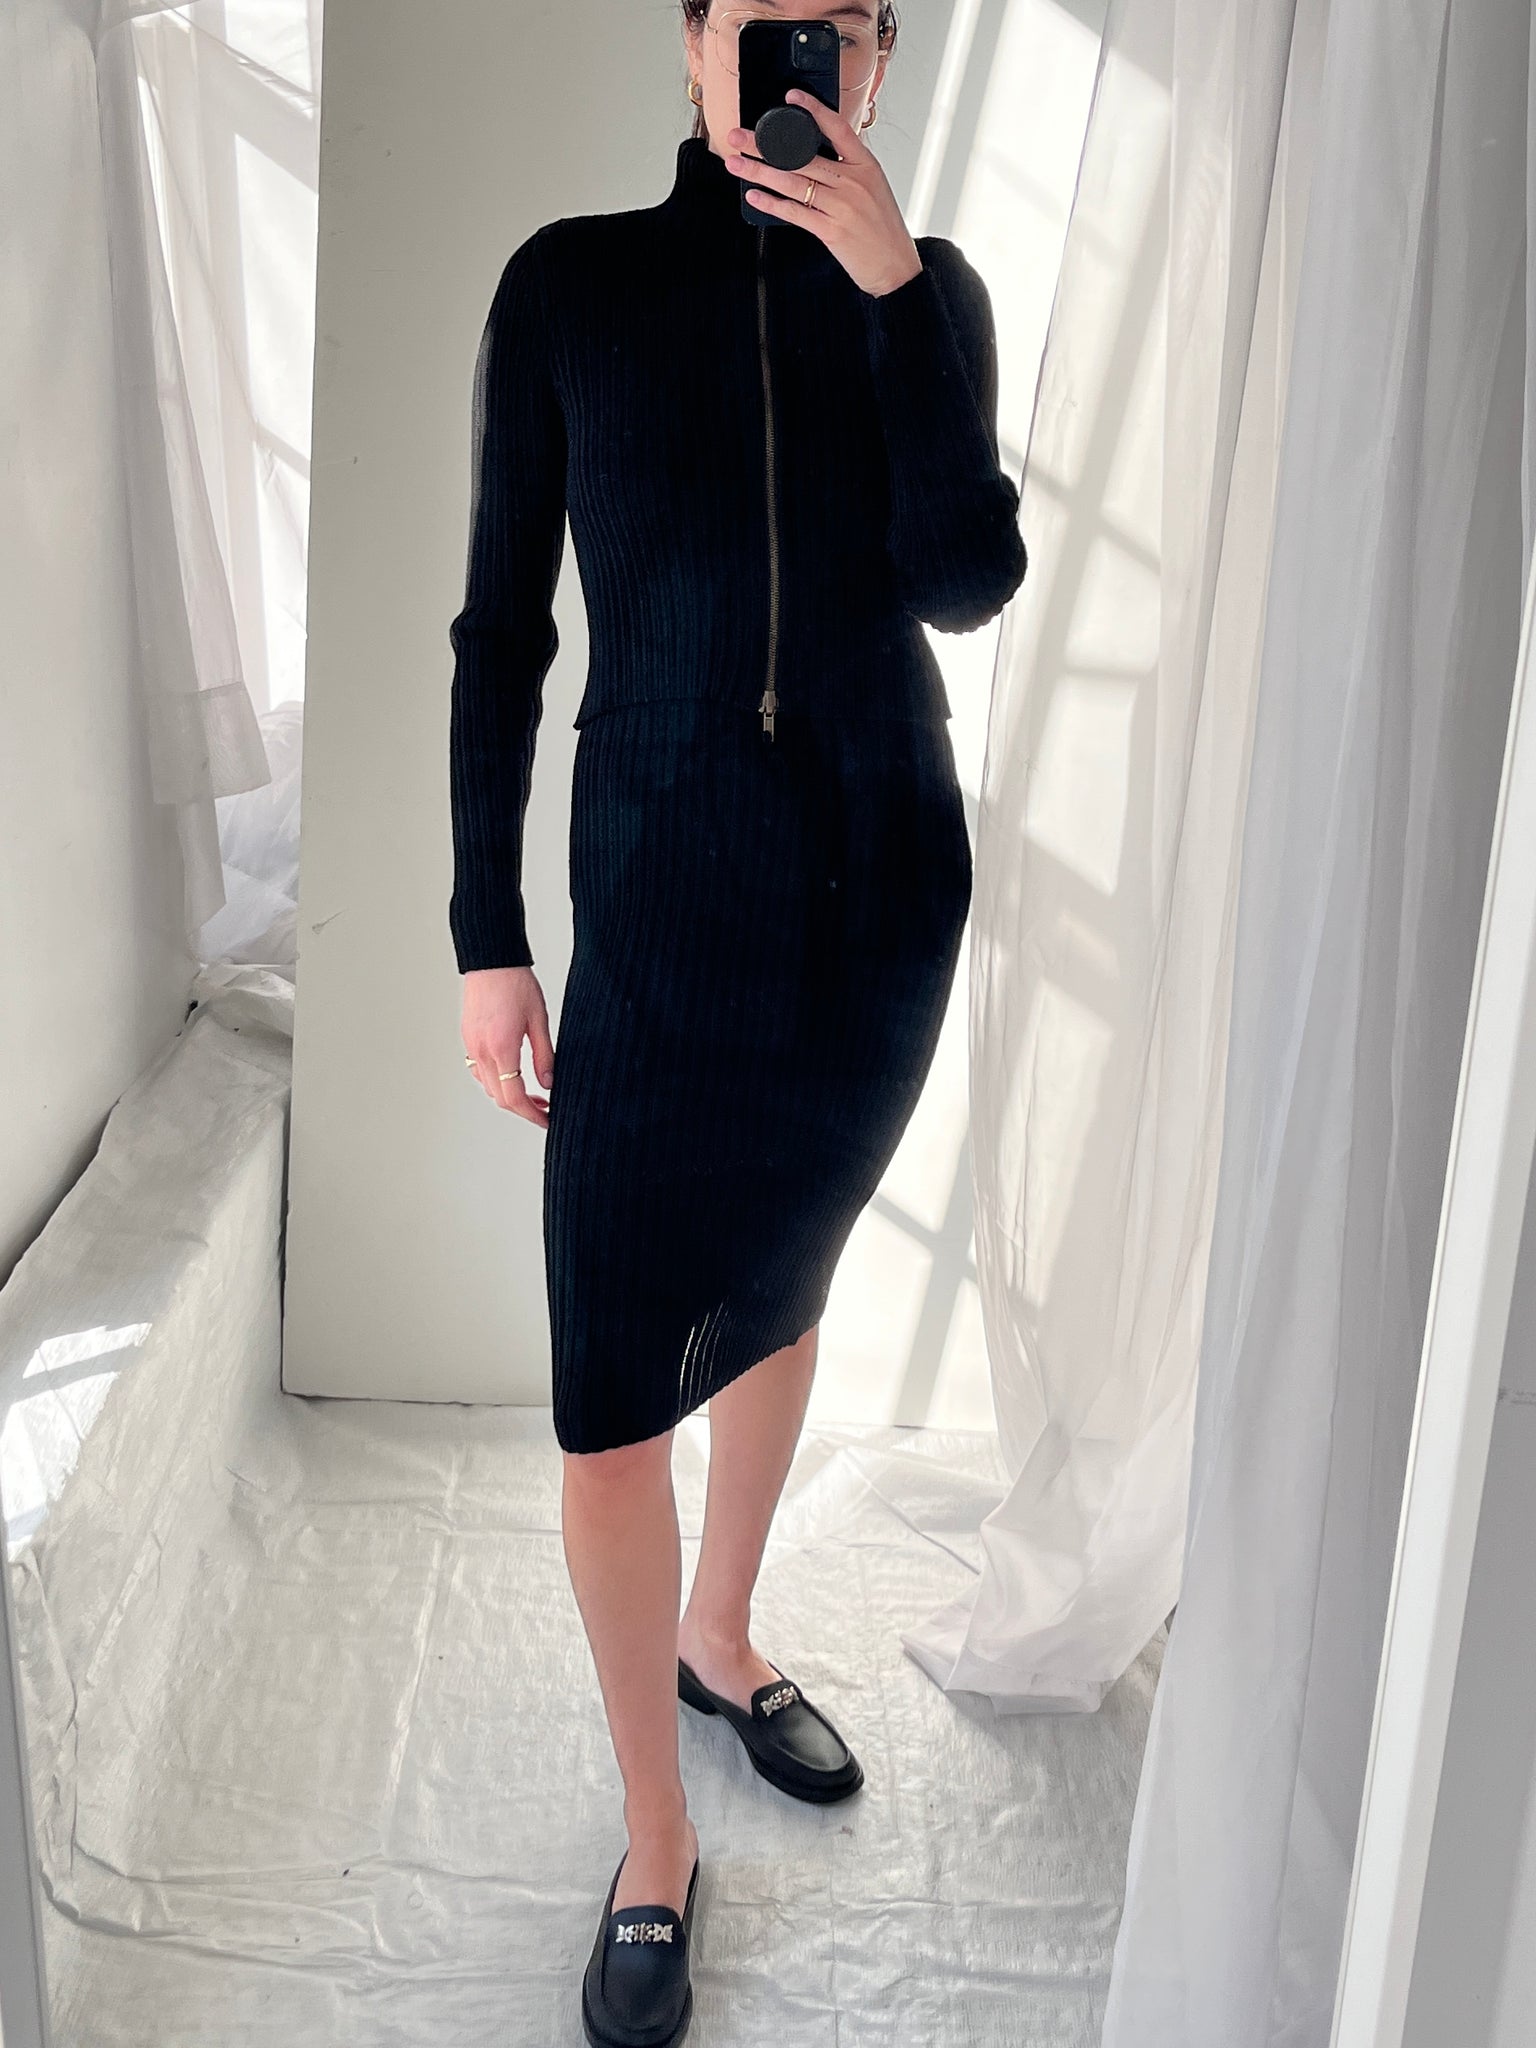 Jean Paul Gaultier Knit Dress & Jacket Gown